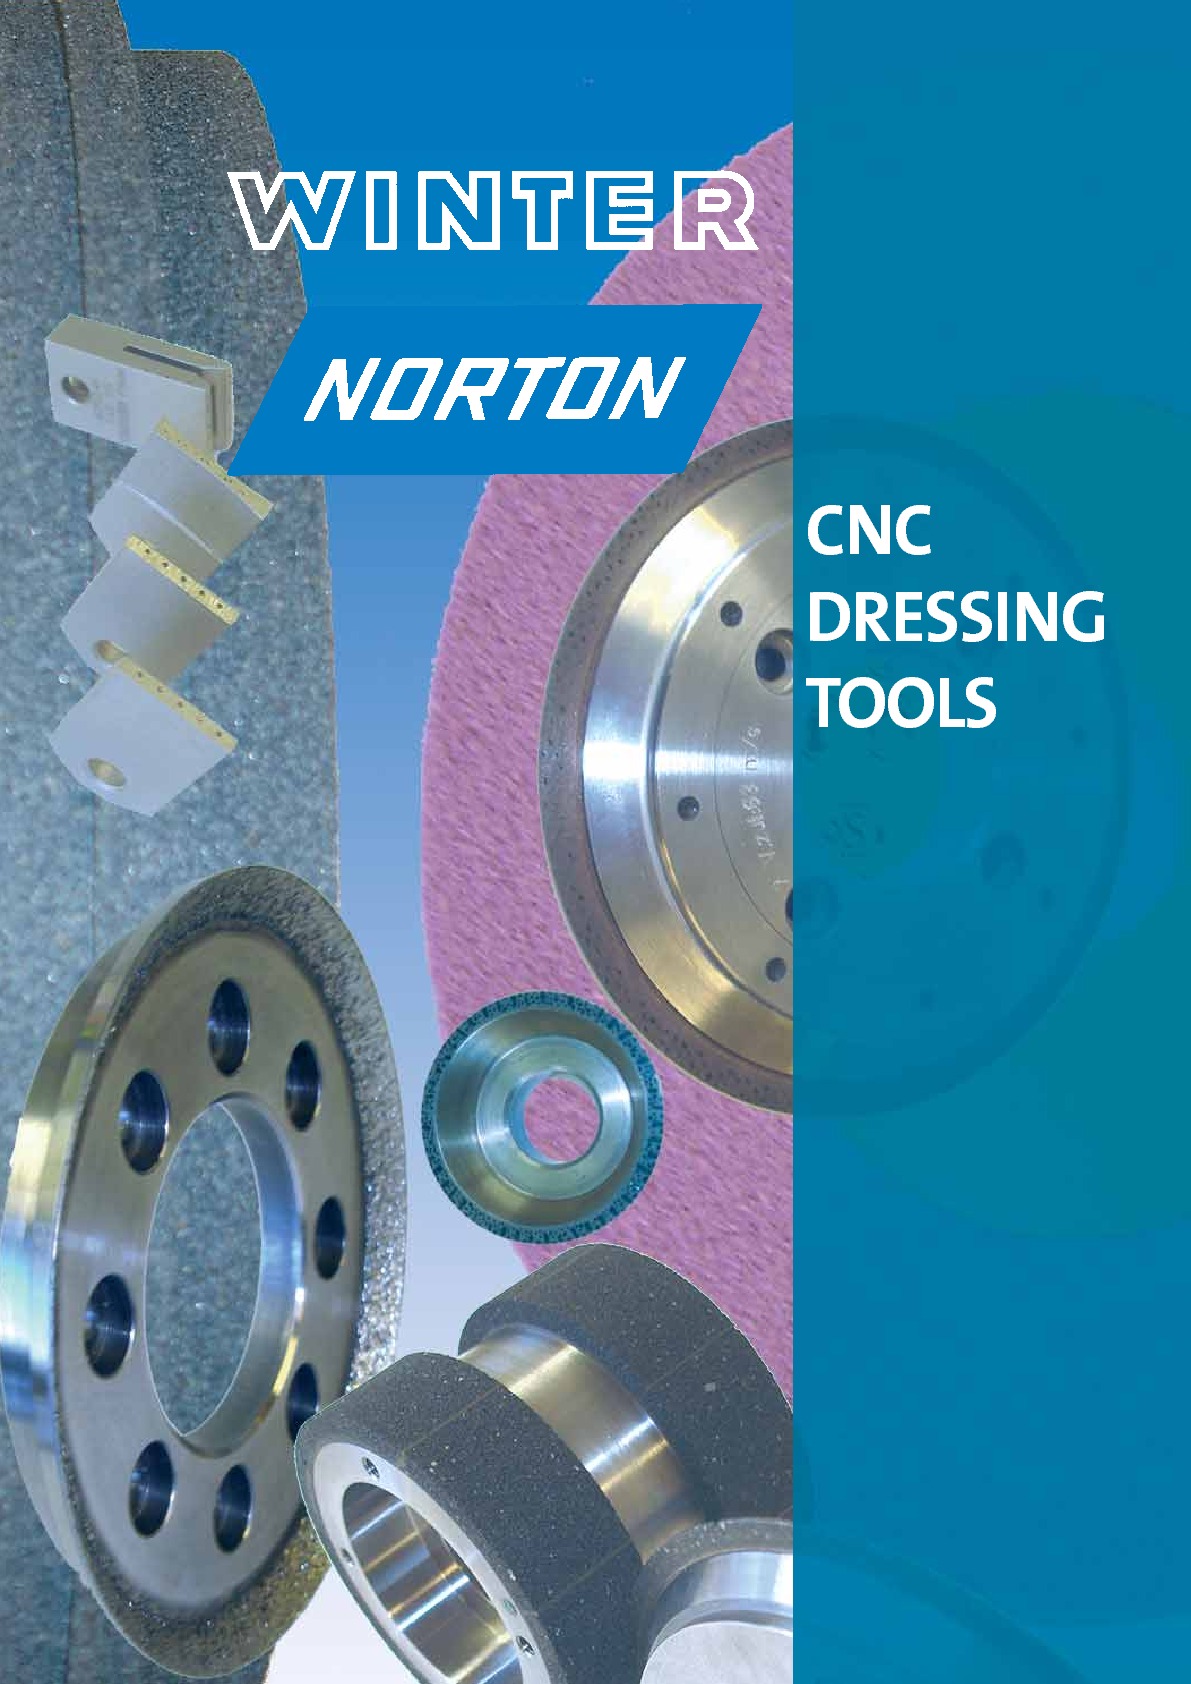 Narzędzia wykończeniowe CNC